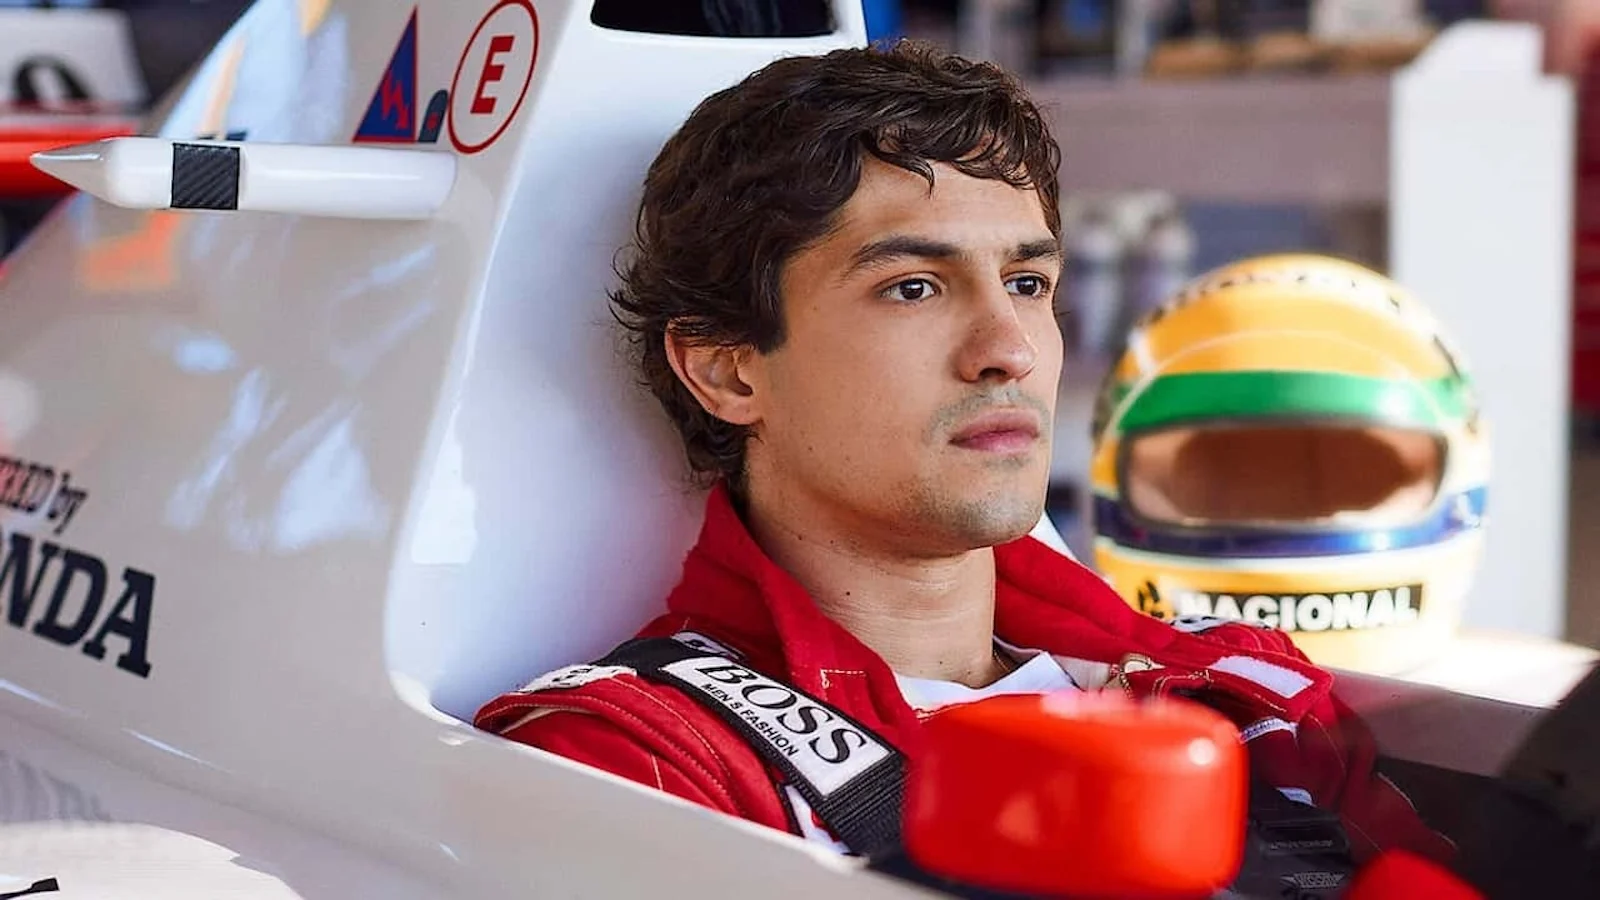 La trama, il trailer, il cast e quando vedere in streaming Senna, la serie Netflix sul pilota di Formula 1